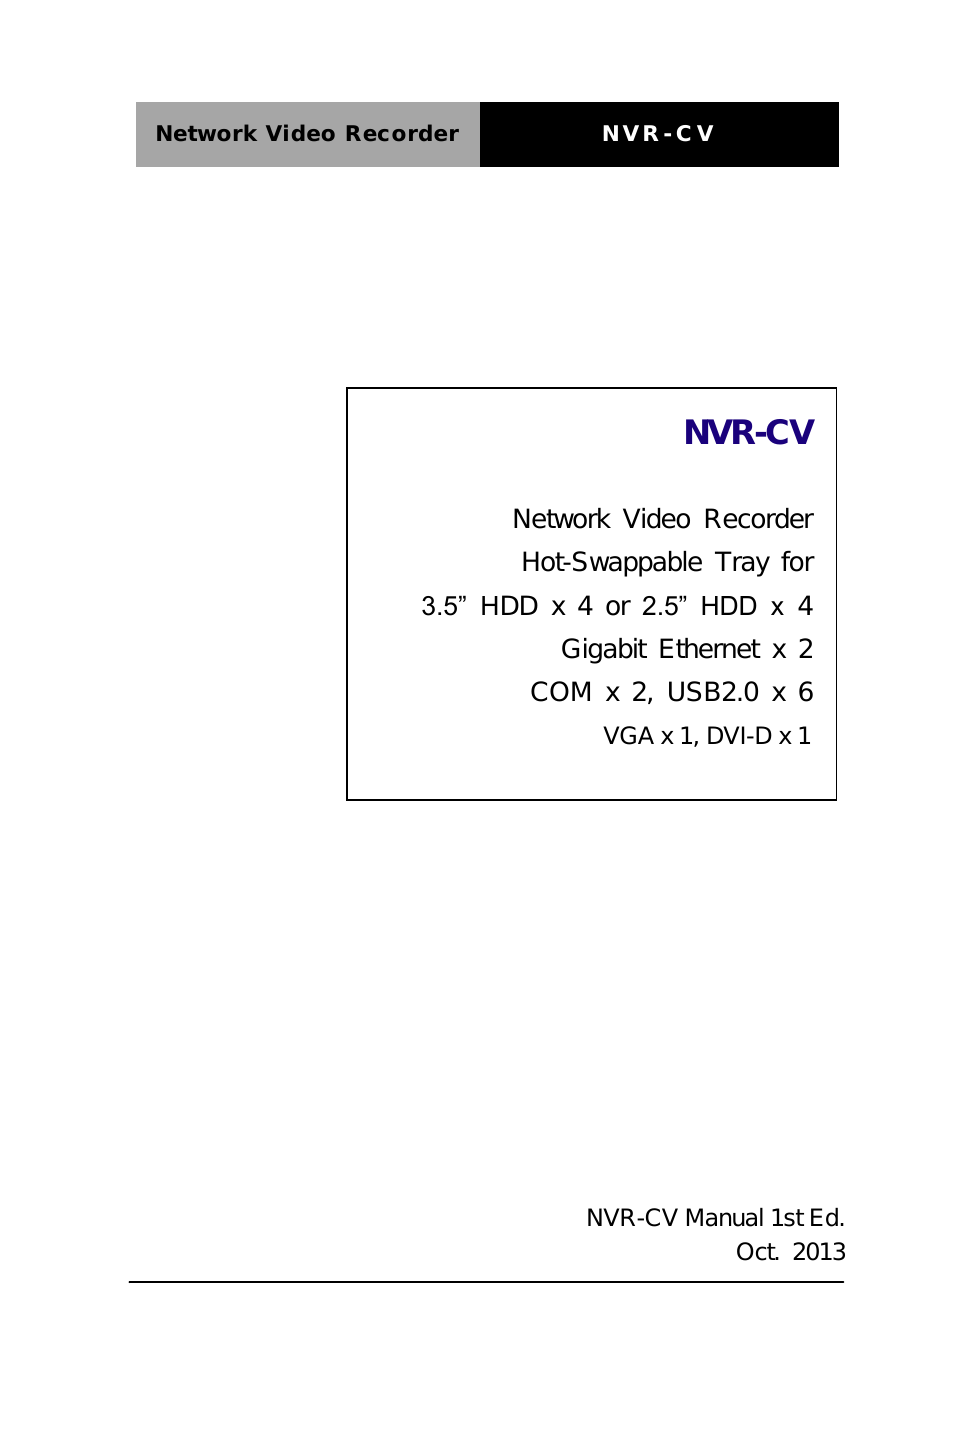 NVR-CV